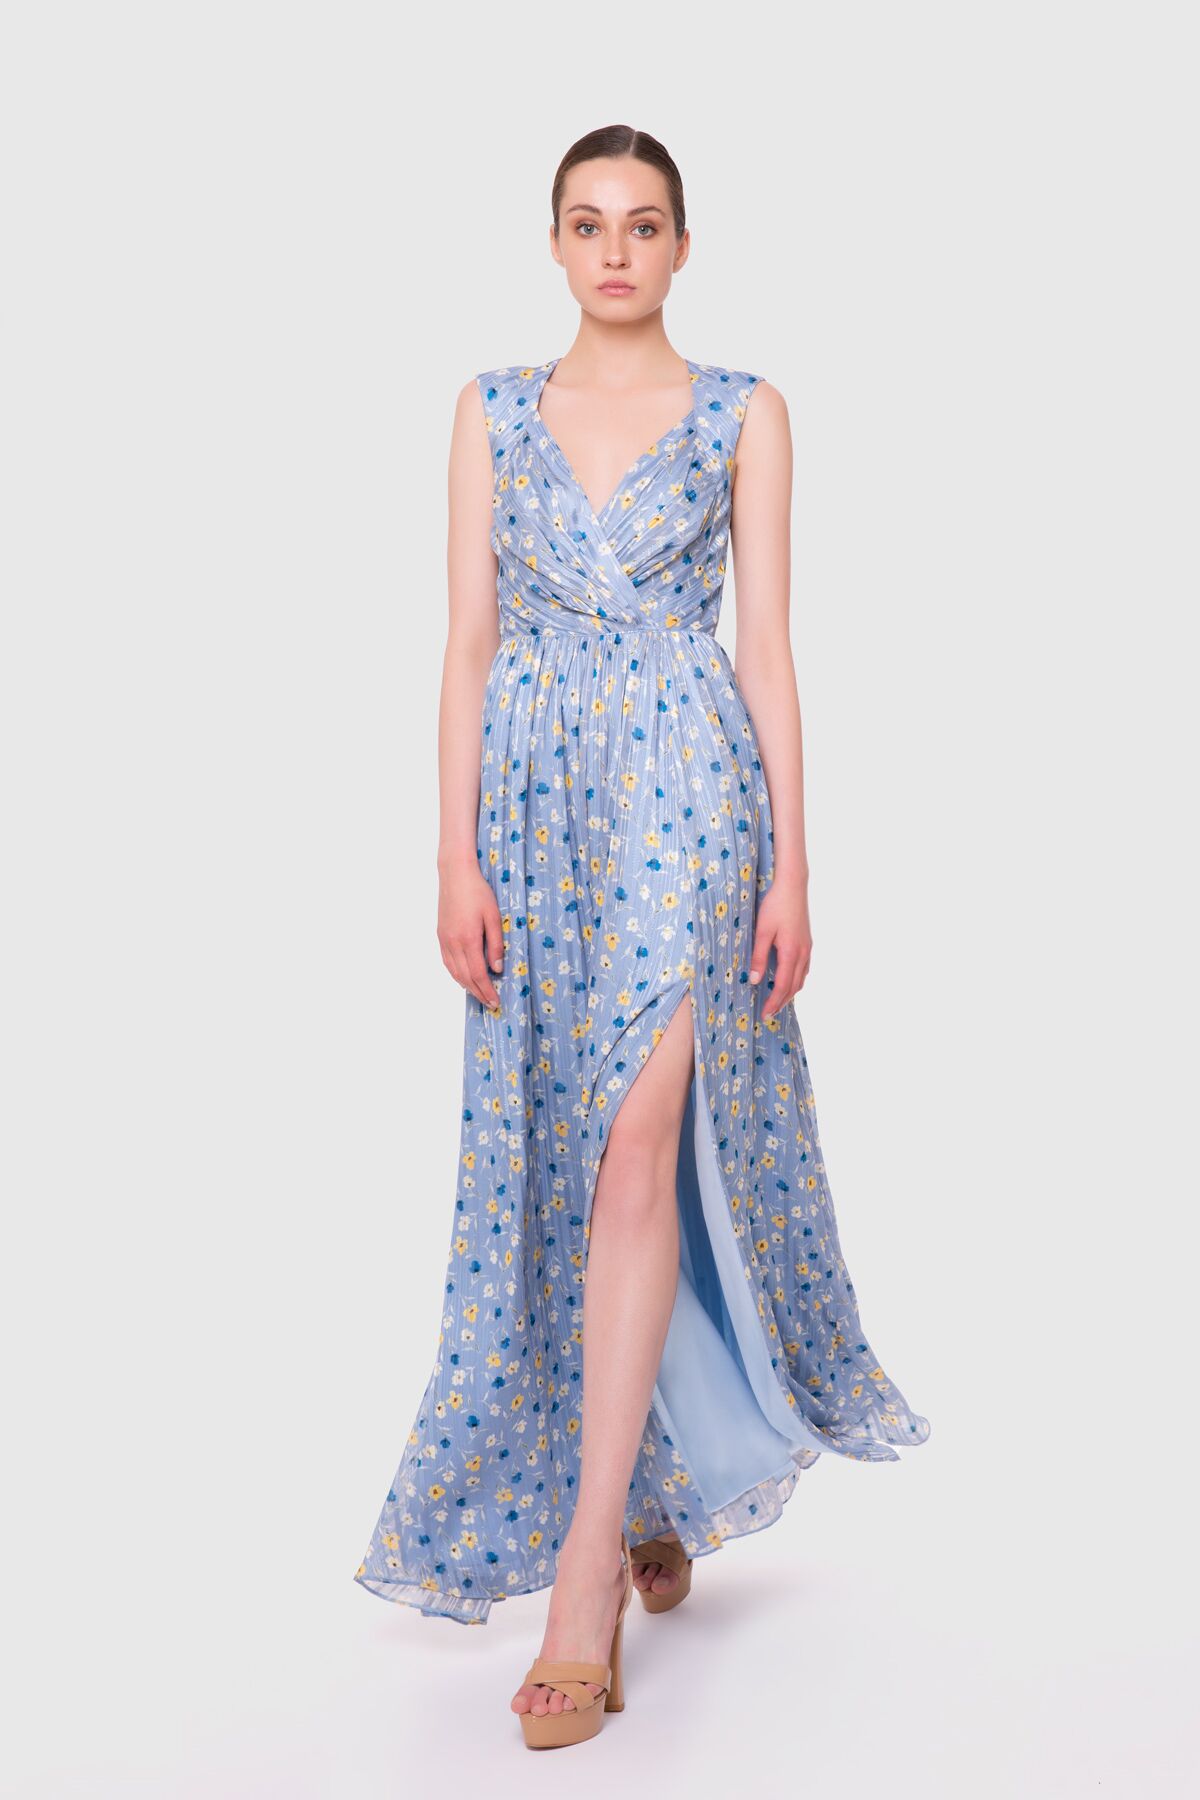  GIZIA - Backless Long Blue Chiffon Dress